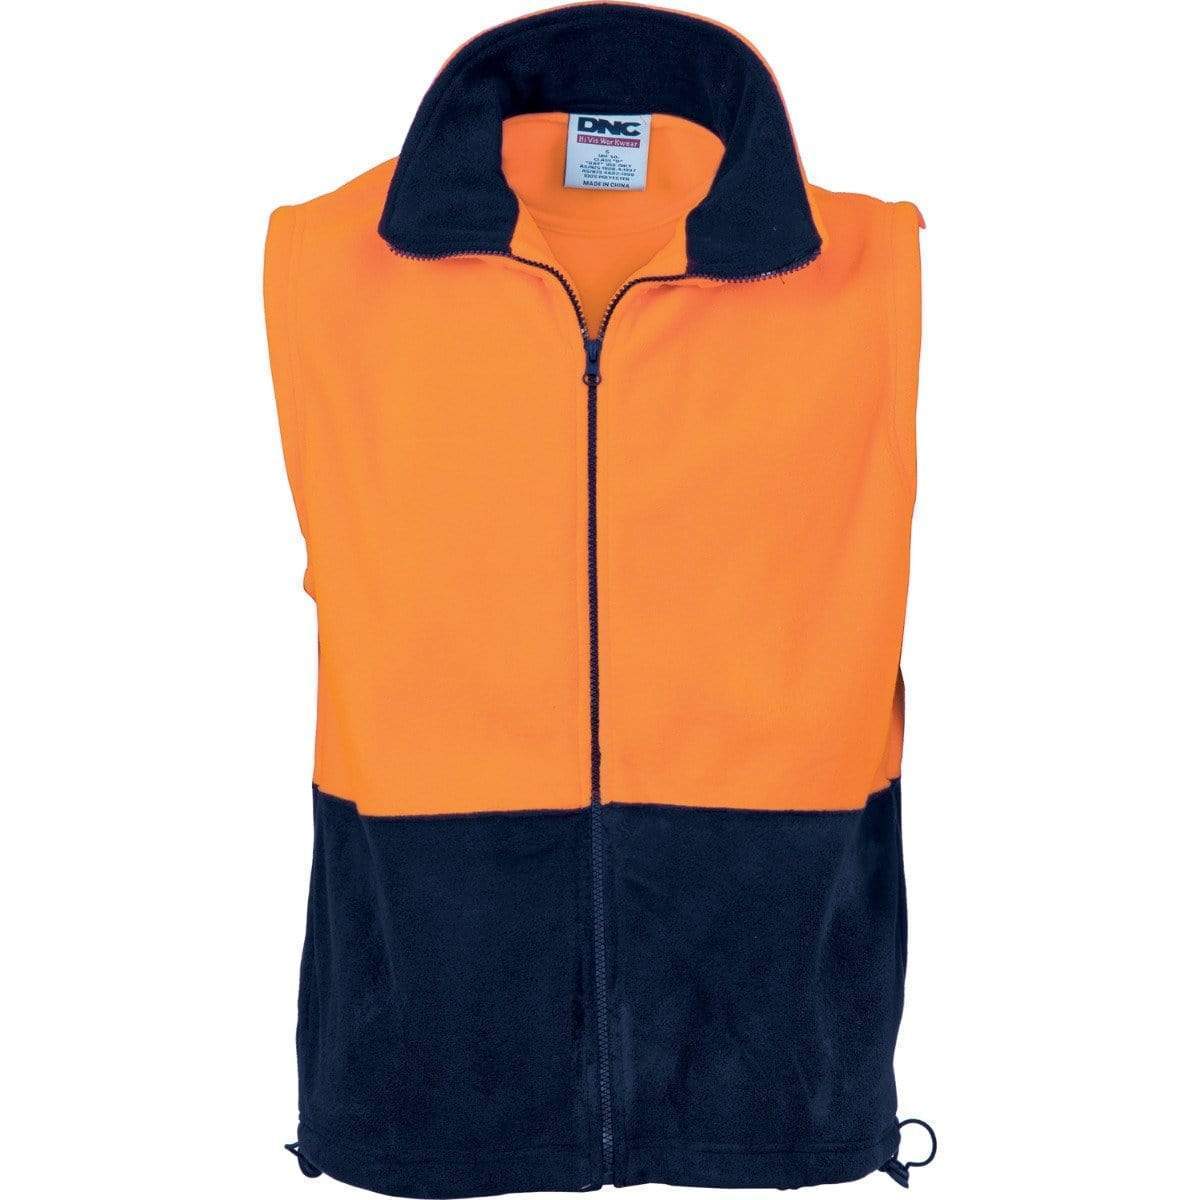 DNC Workwear Work Wear Orange/Navy / XS DNC WORKWEAR Hi-Vis Two Tone Full Zip Polar Fleece Vest 3828